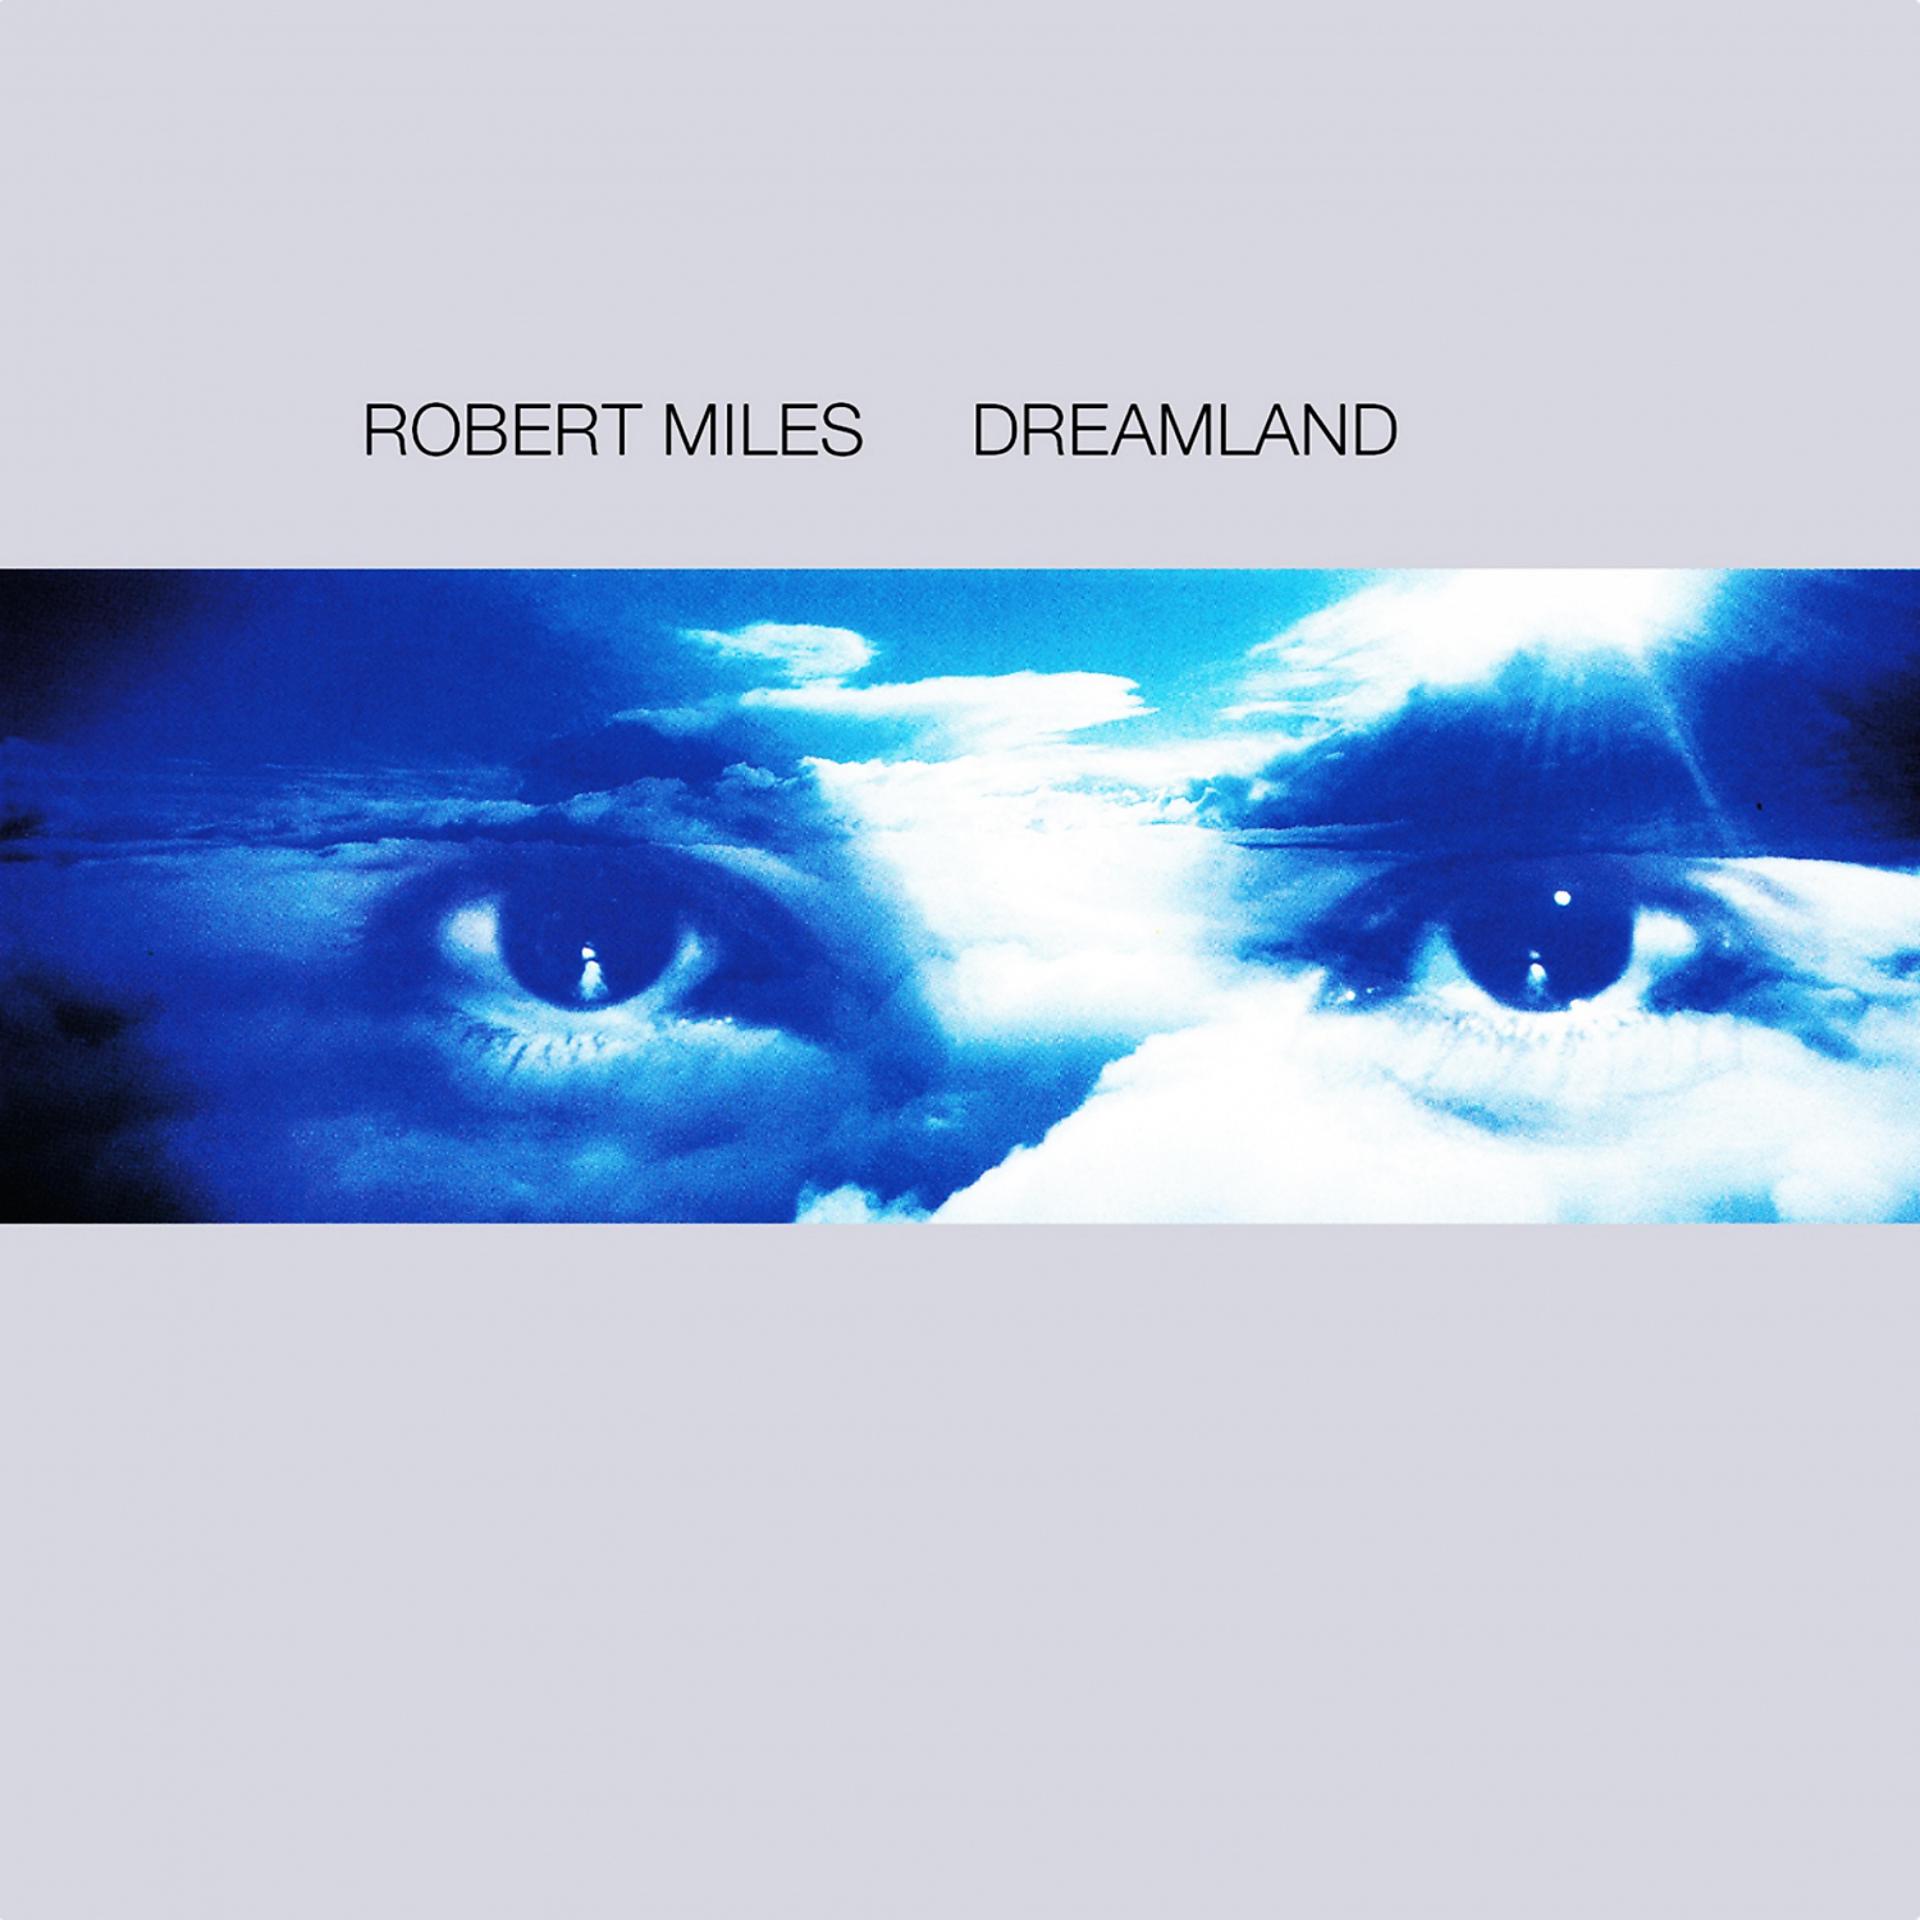 Robert Miles children 1996. Robert Miles Dreamland 1996. Robert Miles - Dreamland (1996) компакт диск.